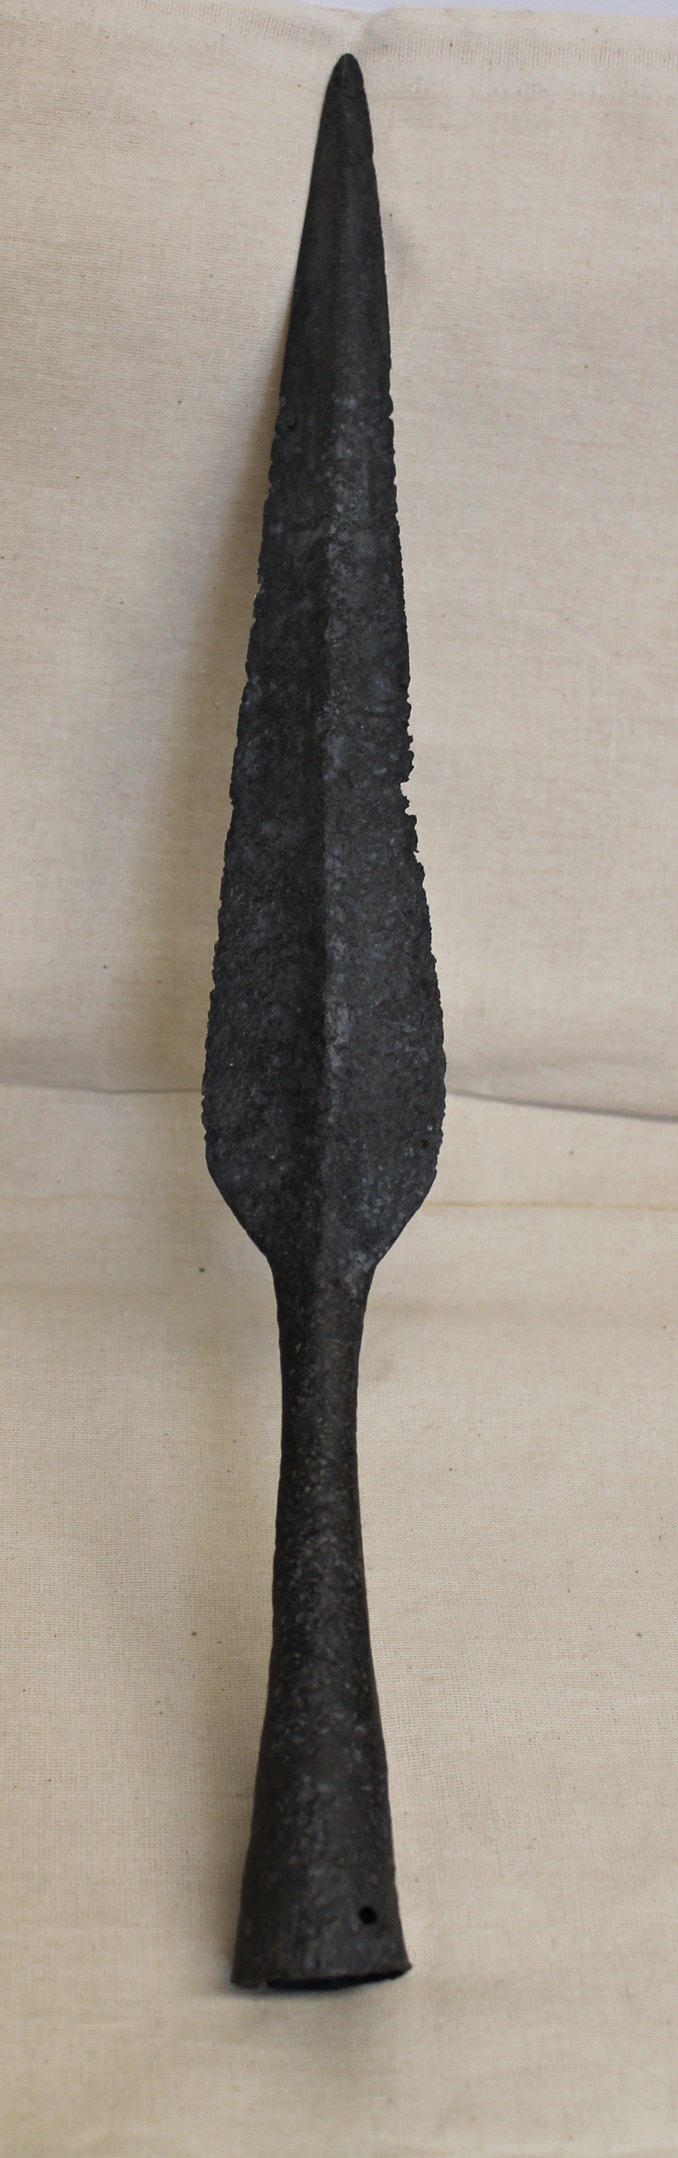 Lándzsahegy (Isaszegi Múzeumi Kiállítóhely (Falumúzeum) CC BY-NC-SA)